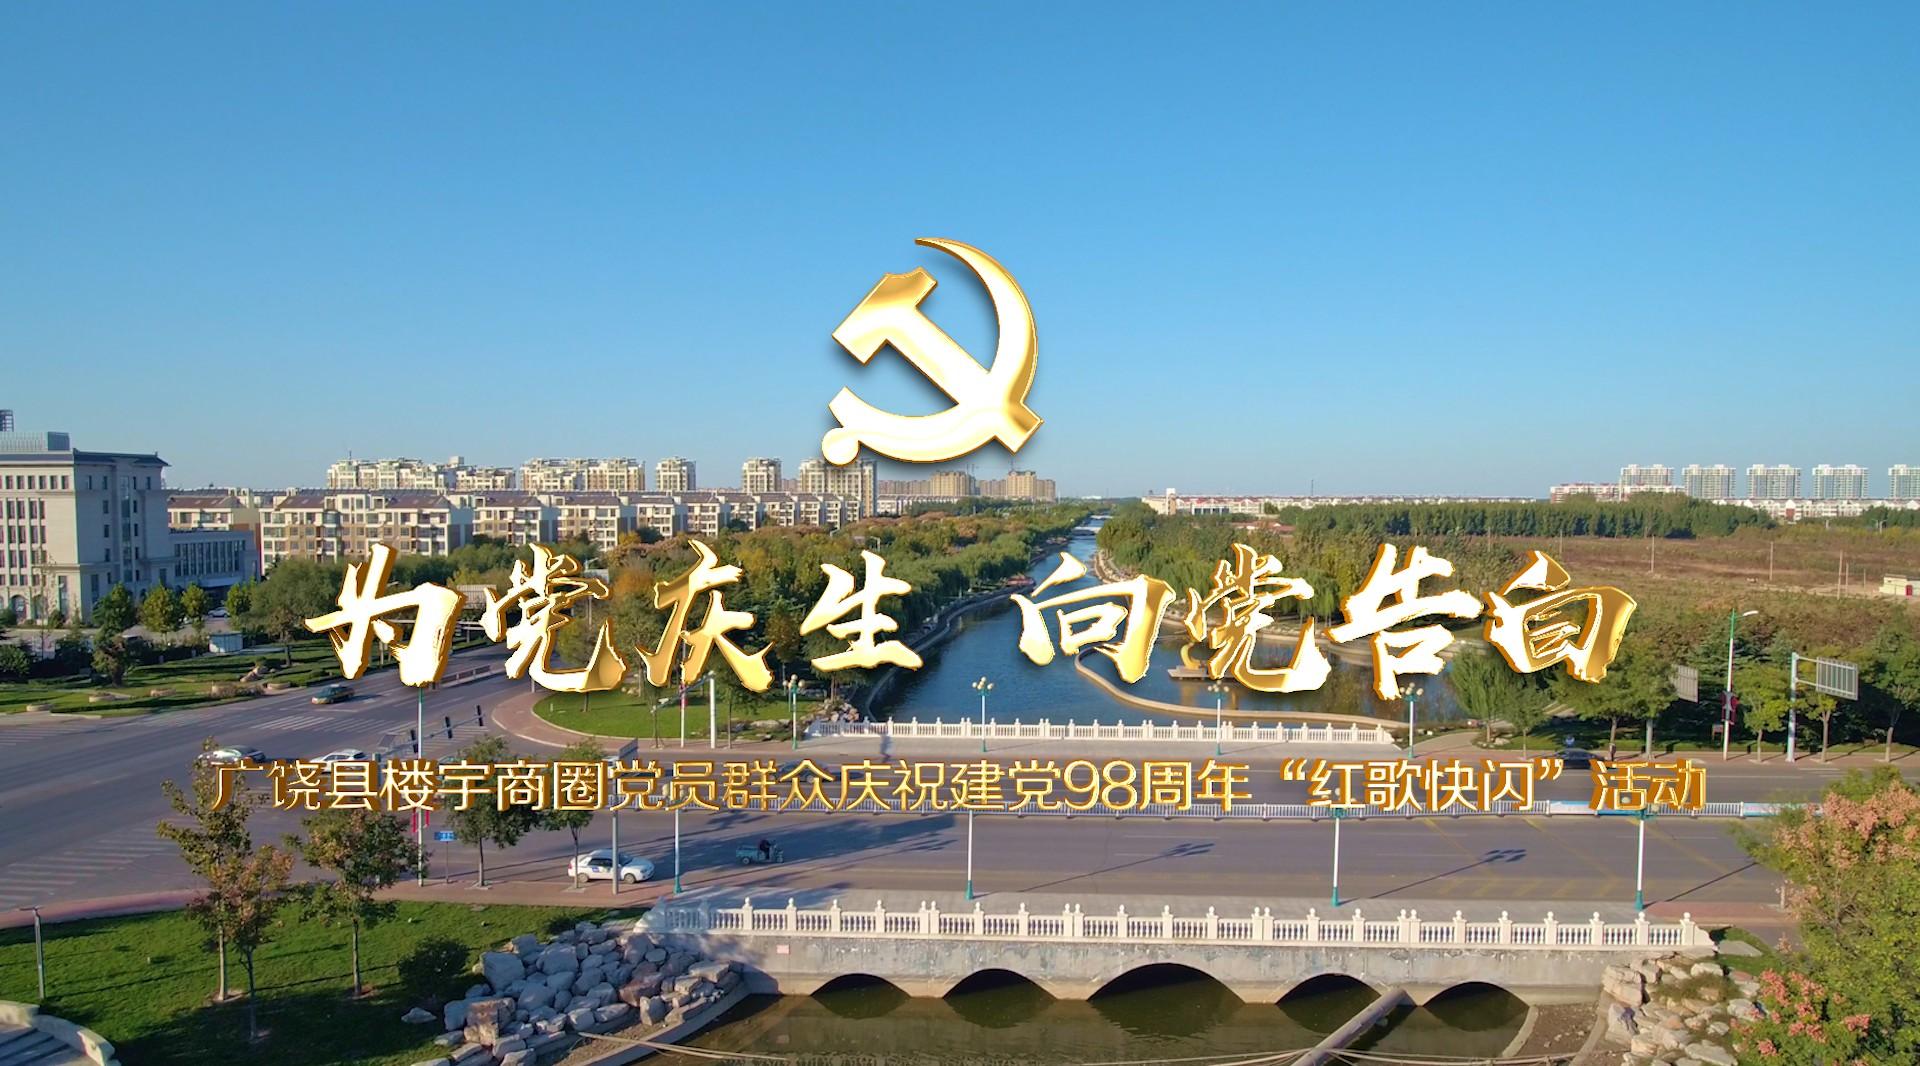 广饶县楼宇商圈党员群众庆祝建党98周年红歌快闪活动